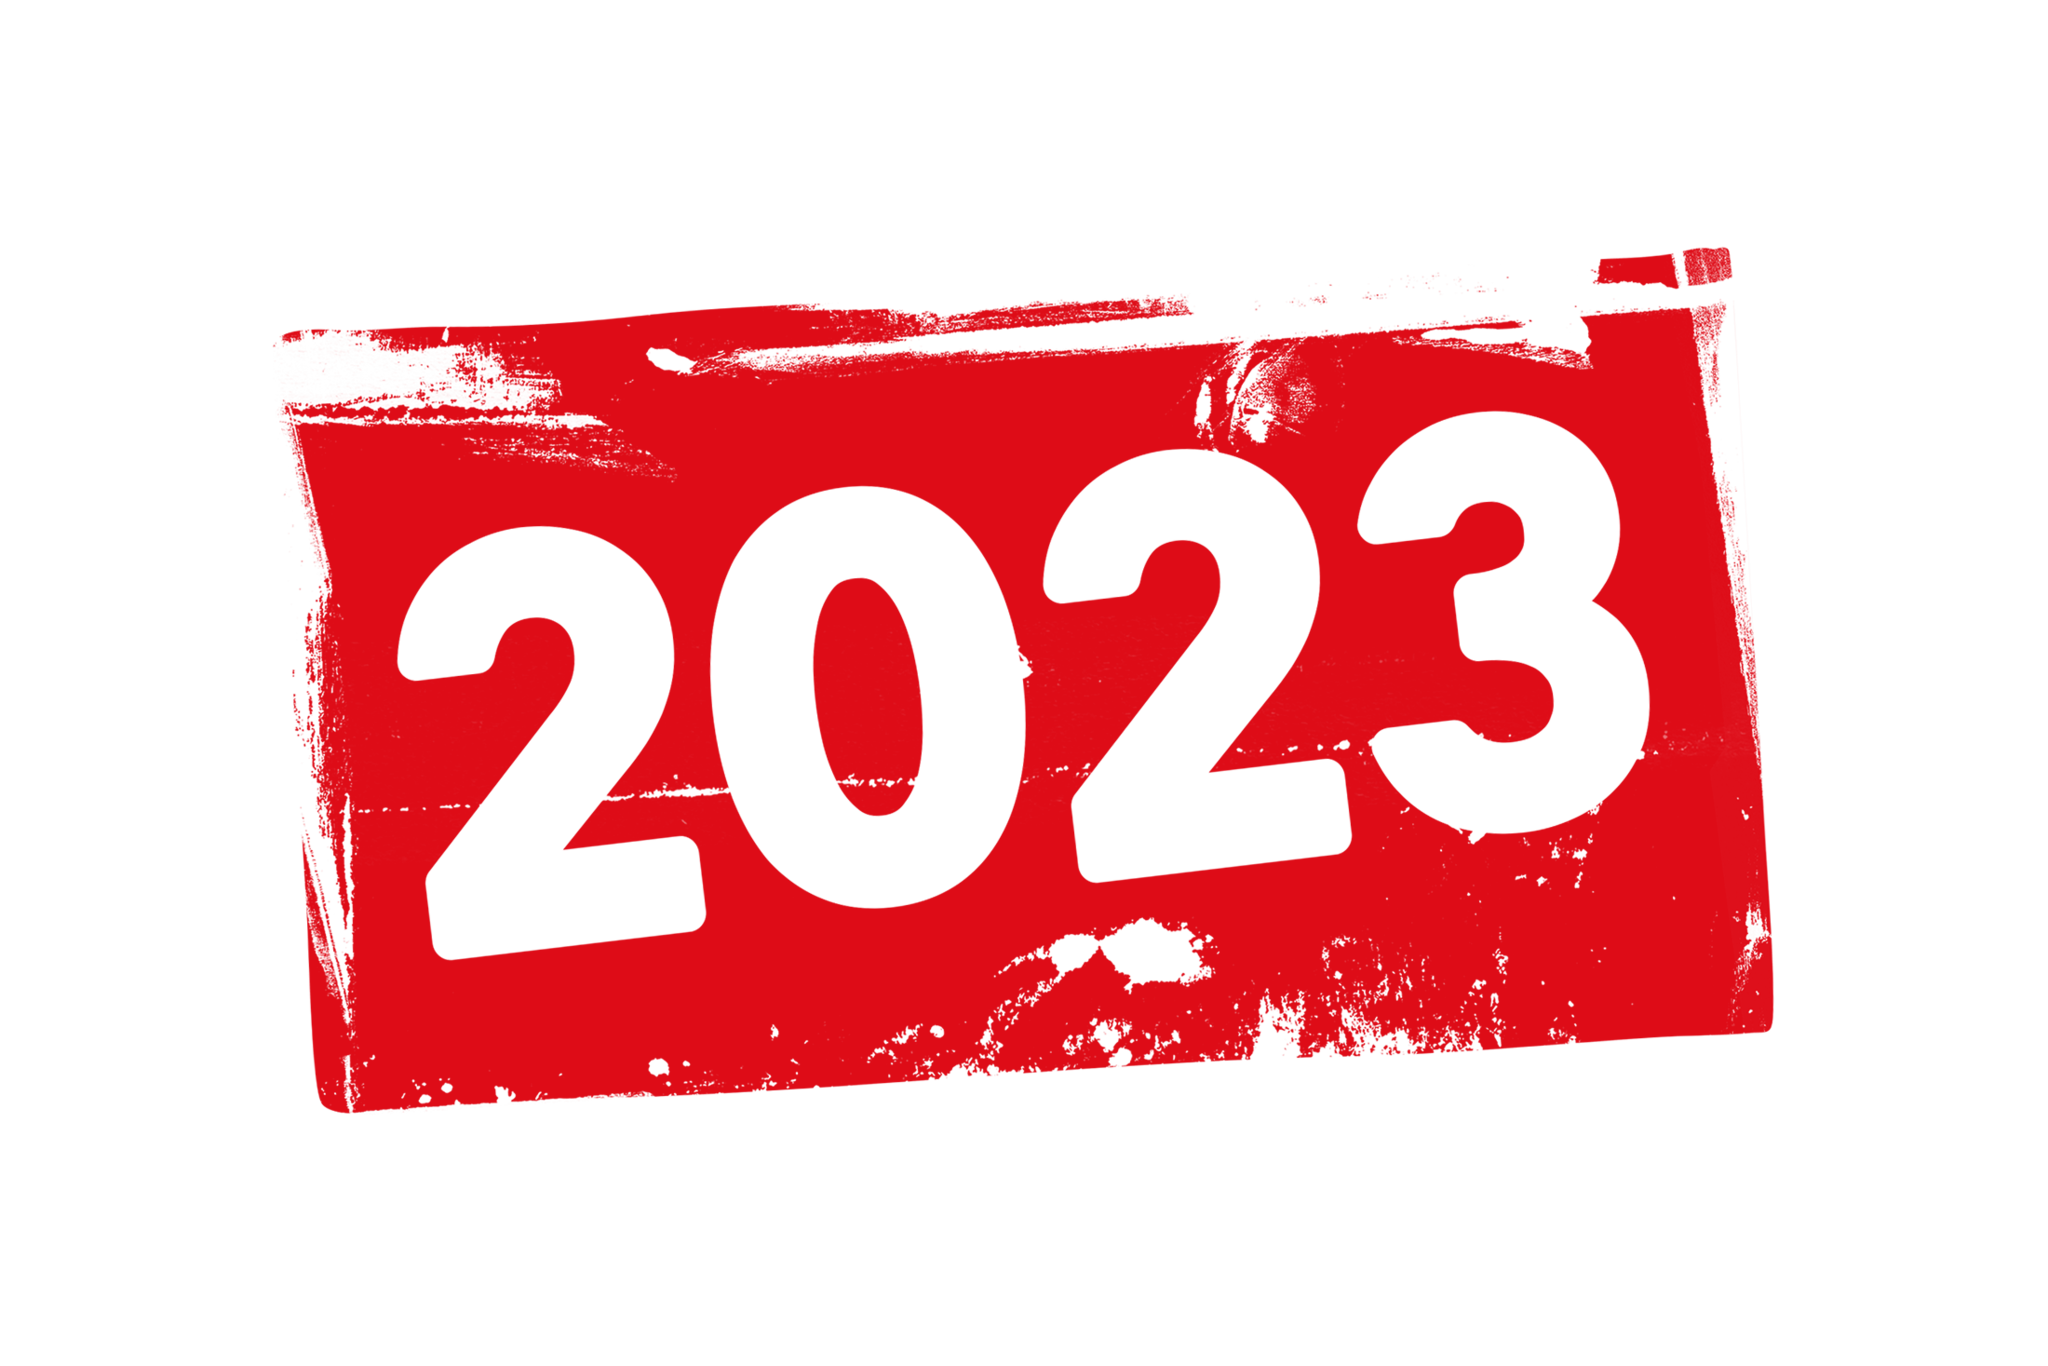 З декабря 2023. 2023 Год. Цифры 2023. Надпись 2023 год. Прозрачная надпись 2023.